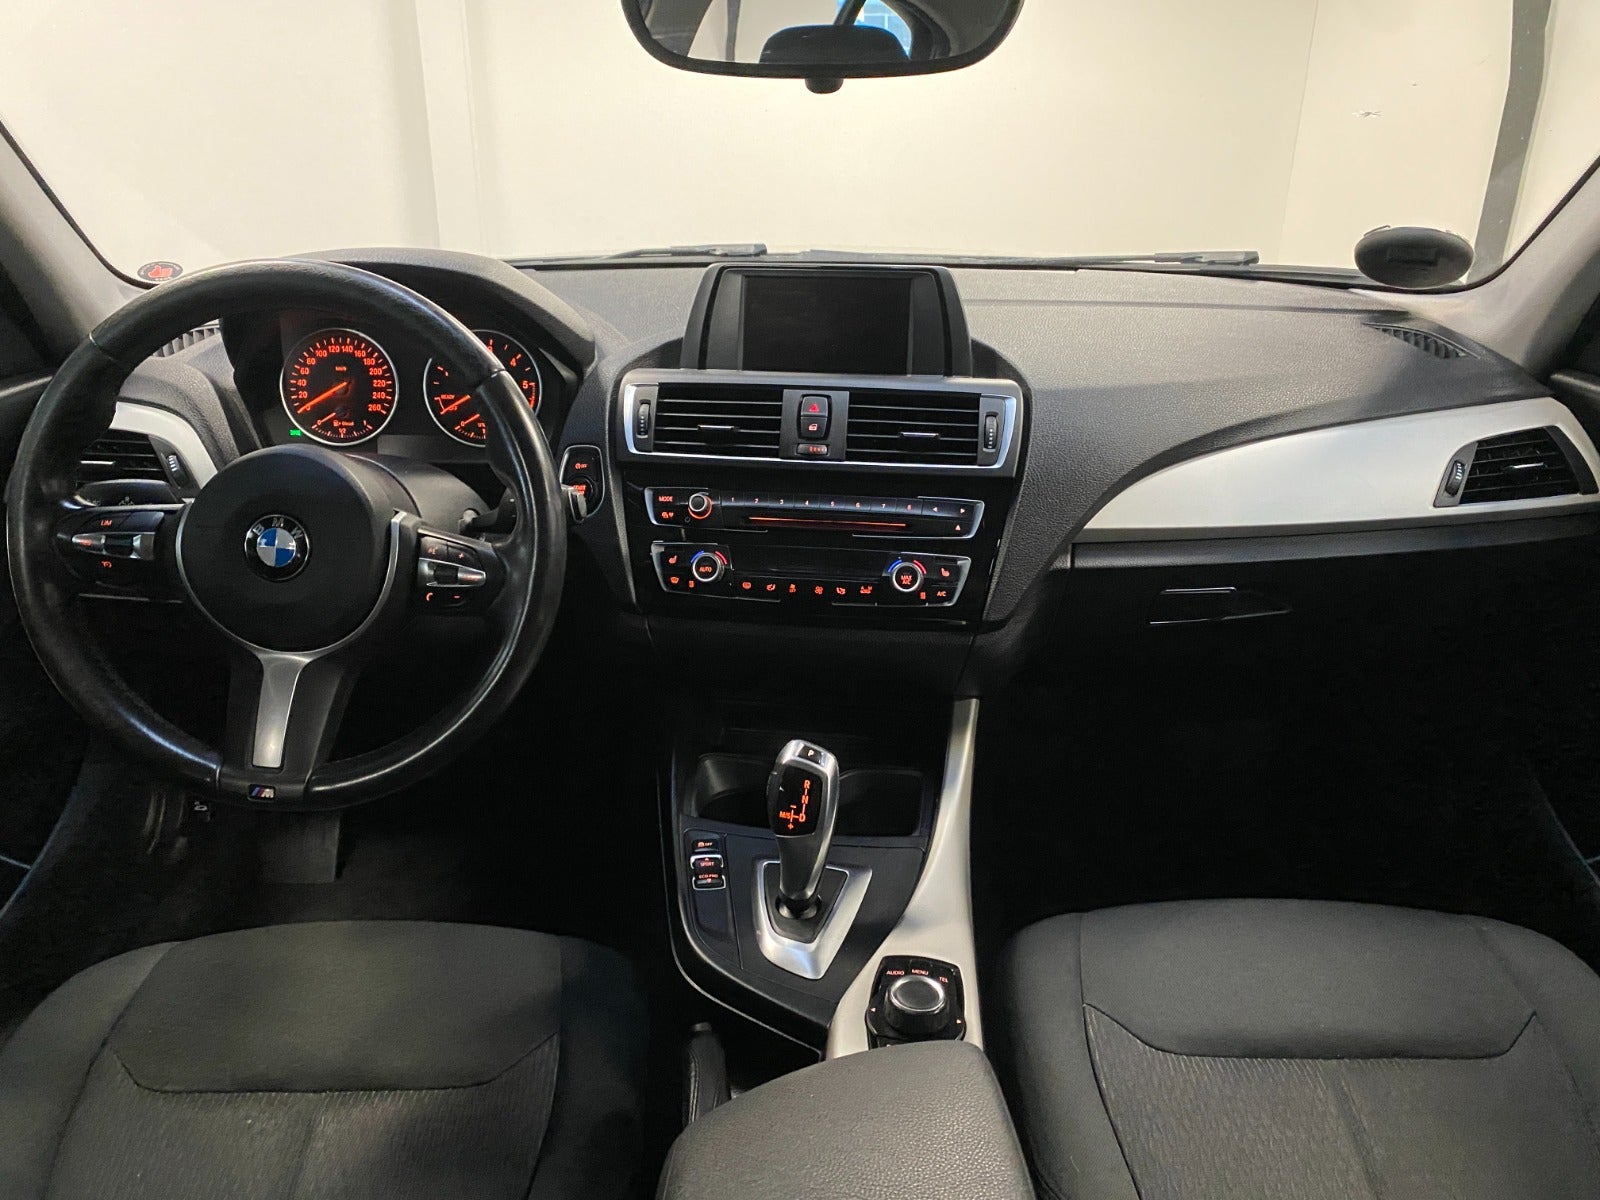 BMW 120d 2,0 aut. Diesel aut. Automatgear modelår 2016 km